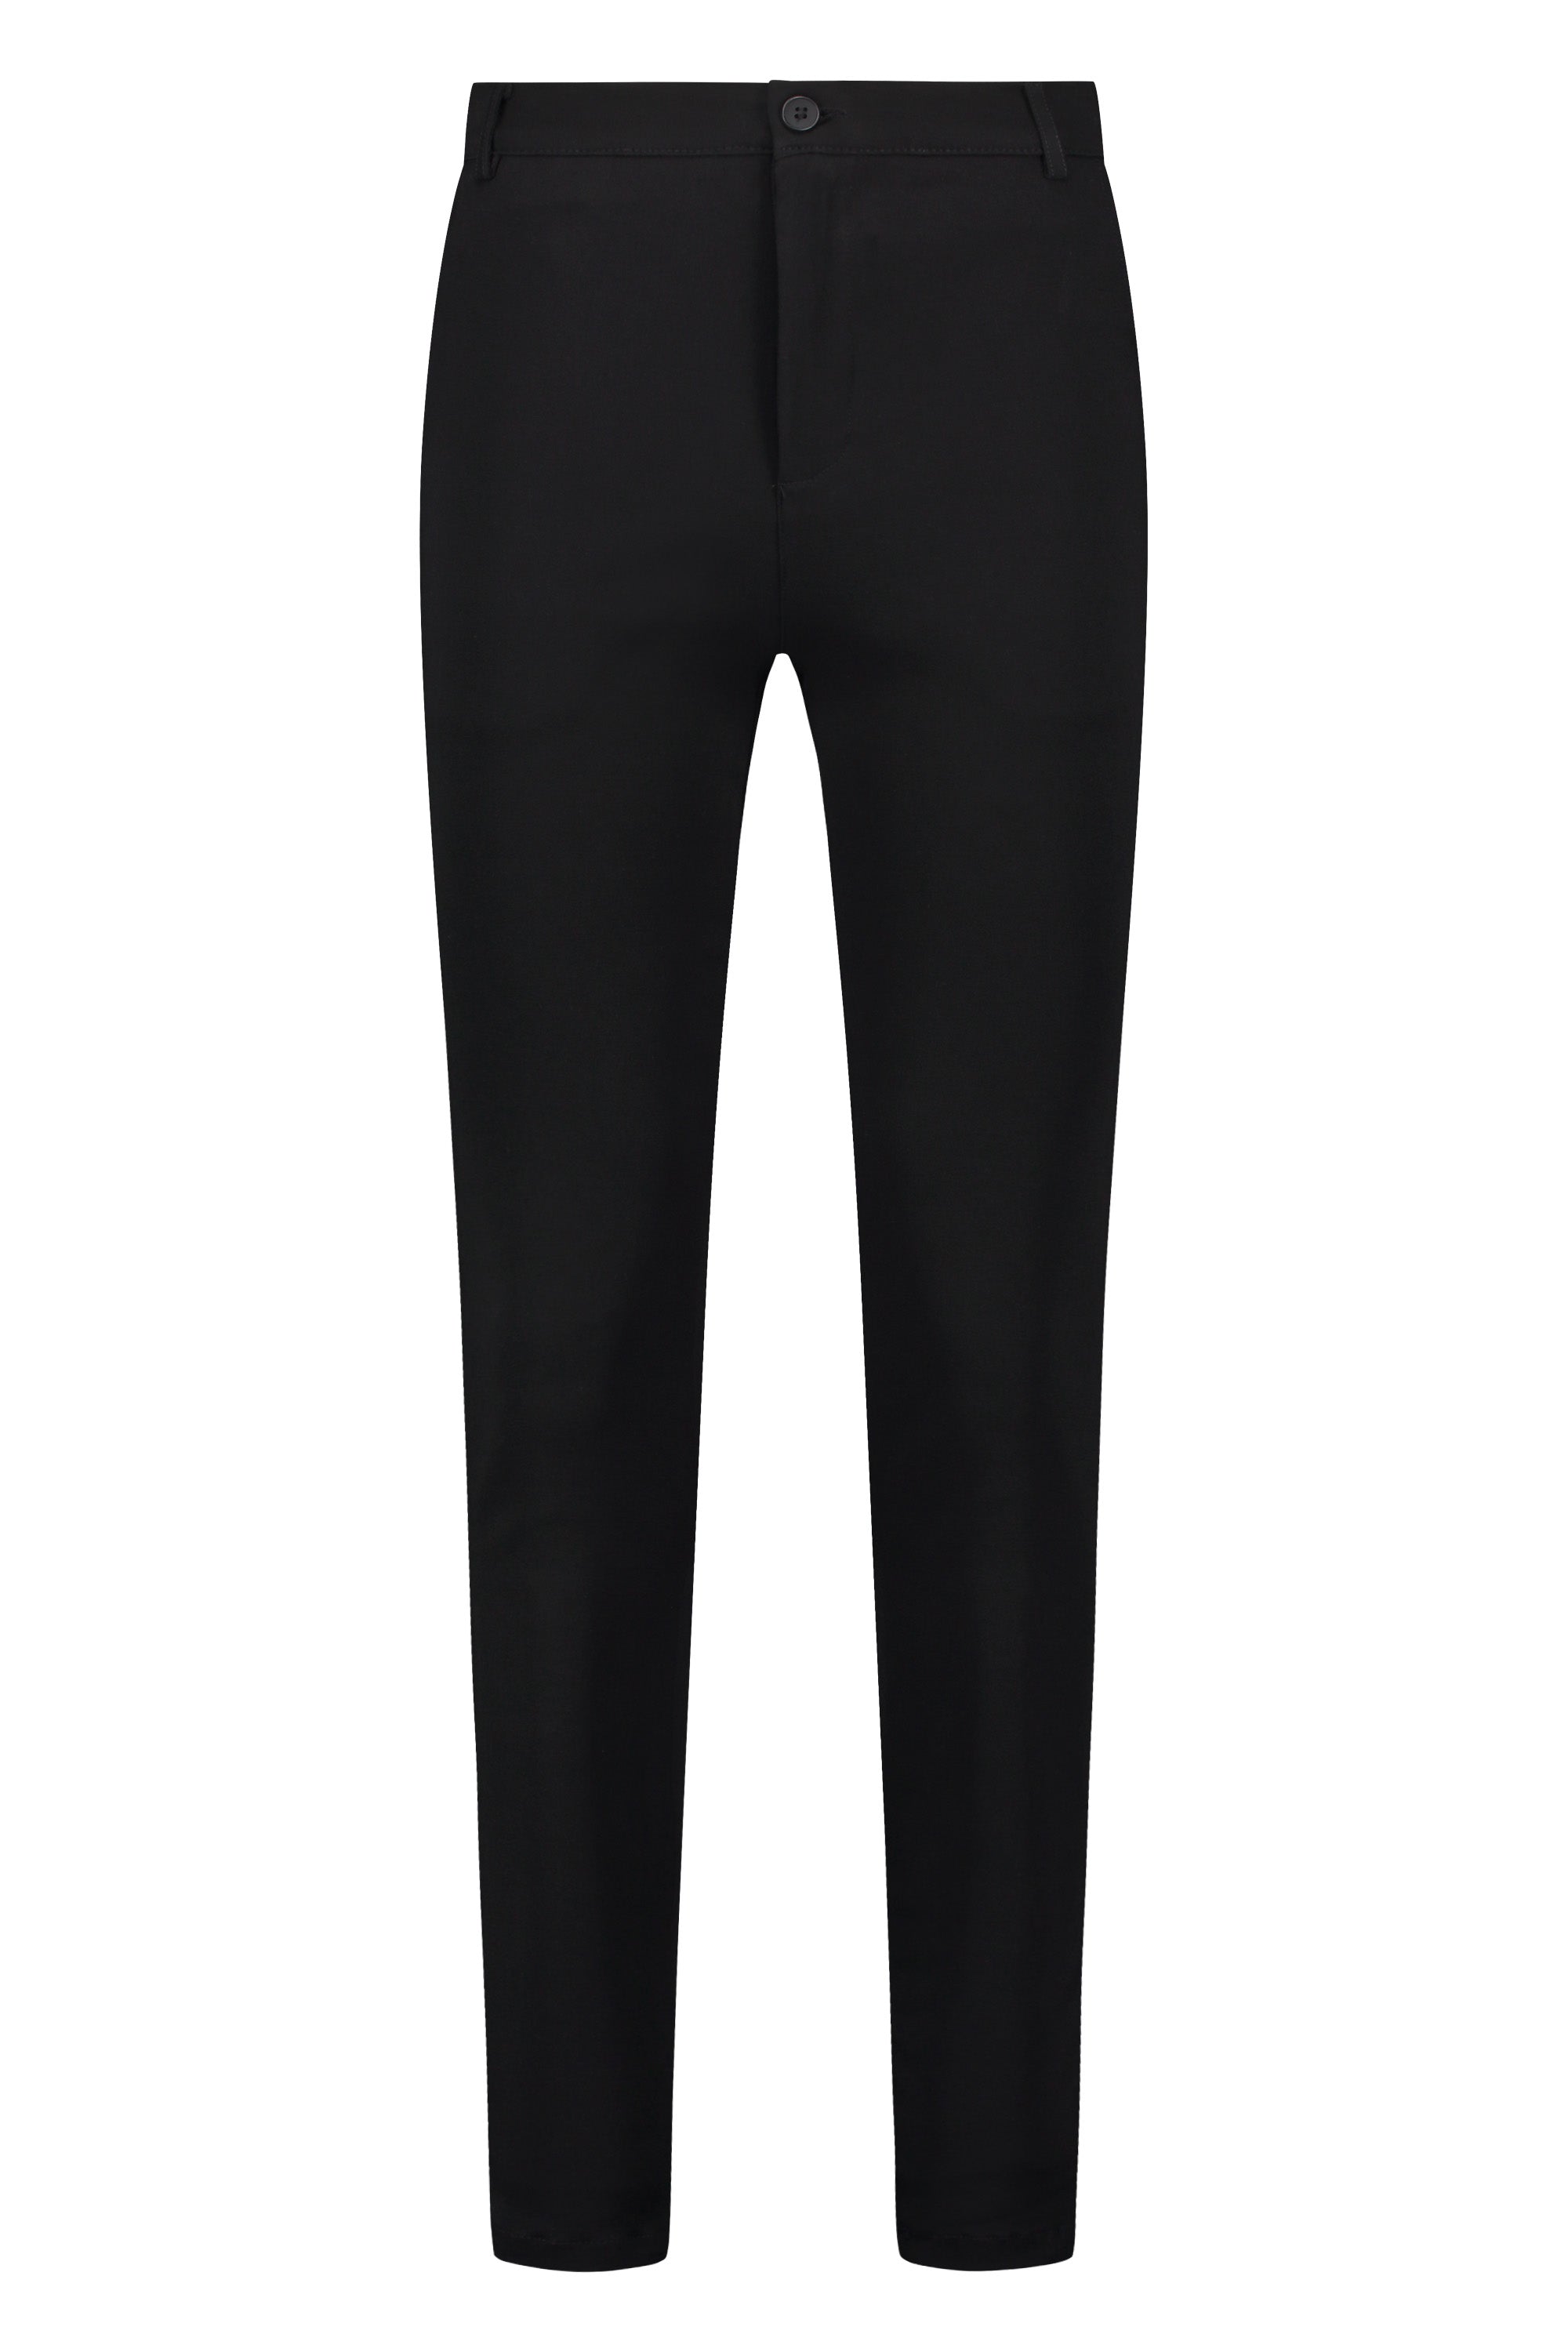 Super stretch trousers black